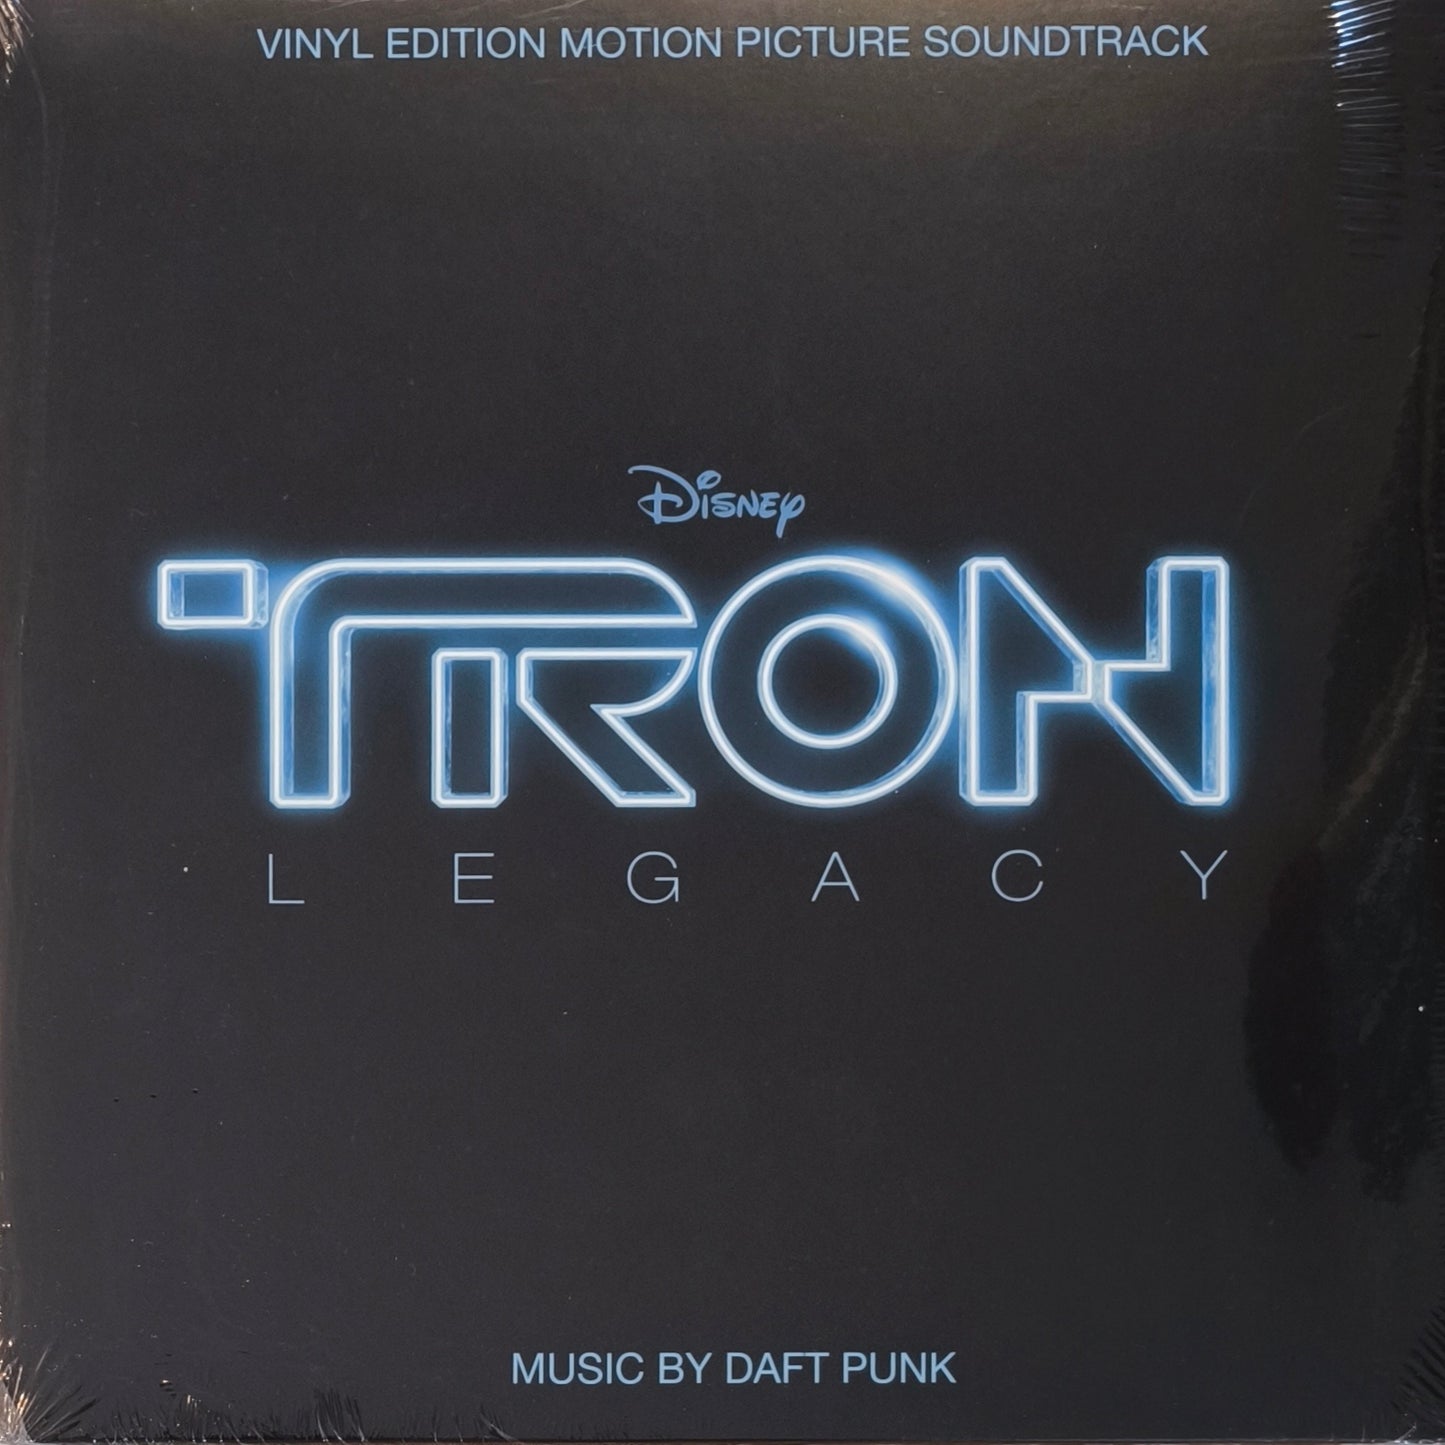 DAFT PUNK - TRON: Legacy (Vinyl Edition Motion Picture Soundtrack)